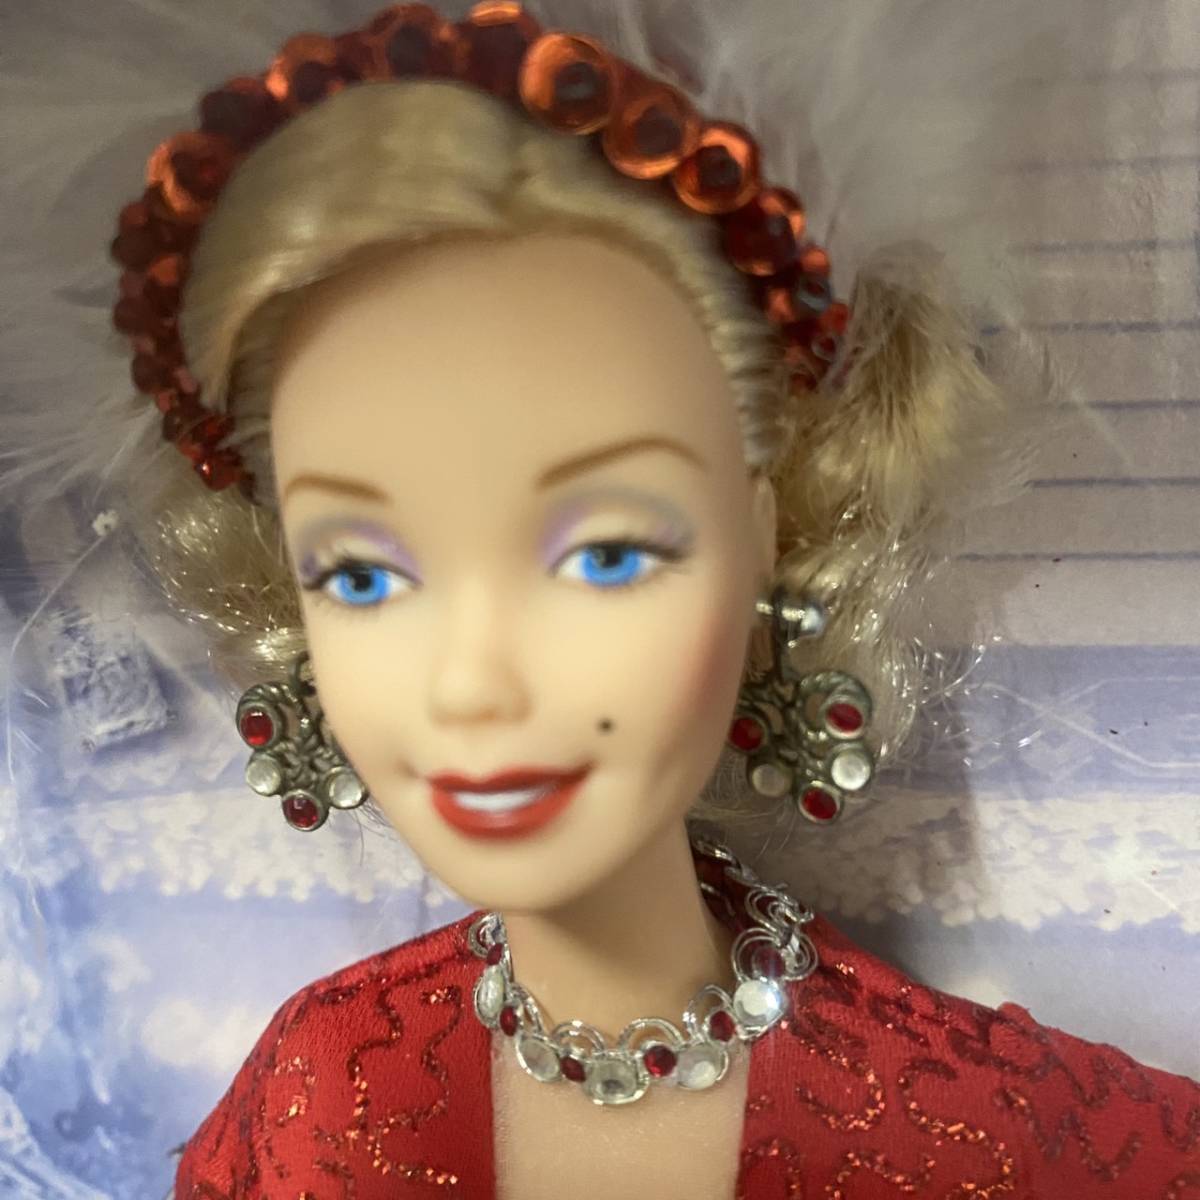 ◆◇マテル バービー HOLLYWOOD LEGENDS COLLECTION Collector Edition マリリン・モンロー Barbie Marilyn Monroe Mattel 未開封品◇◆_画像4